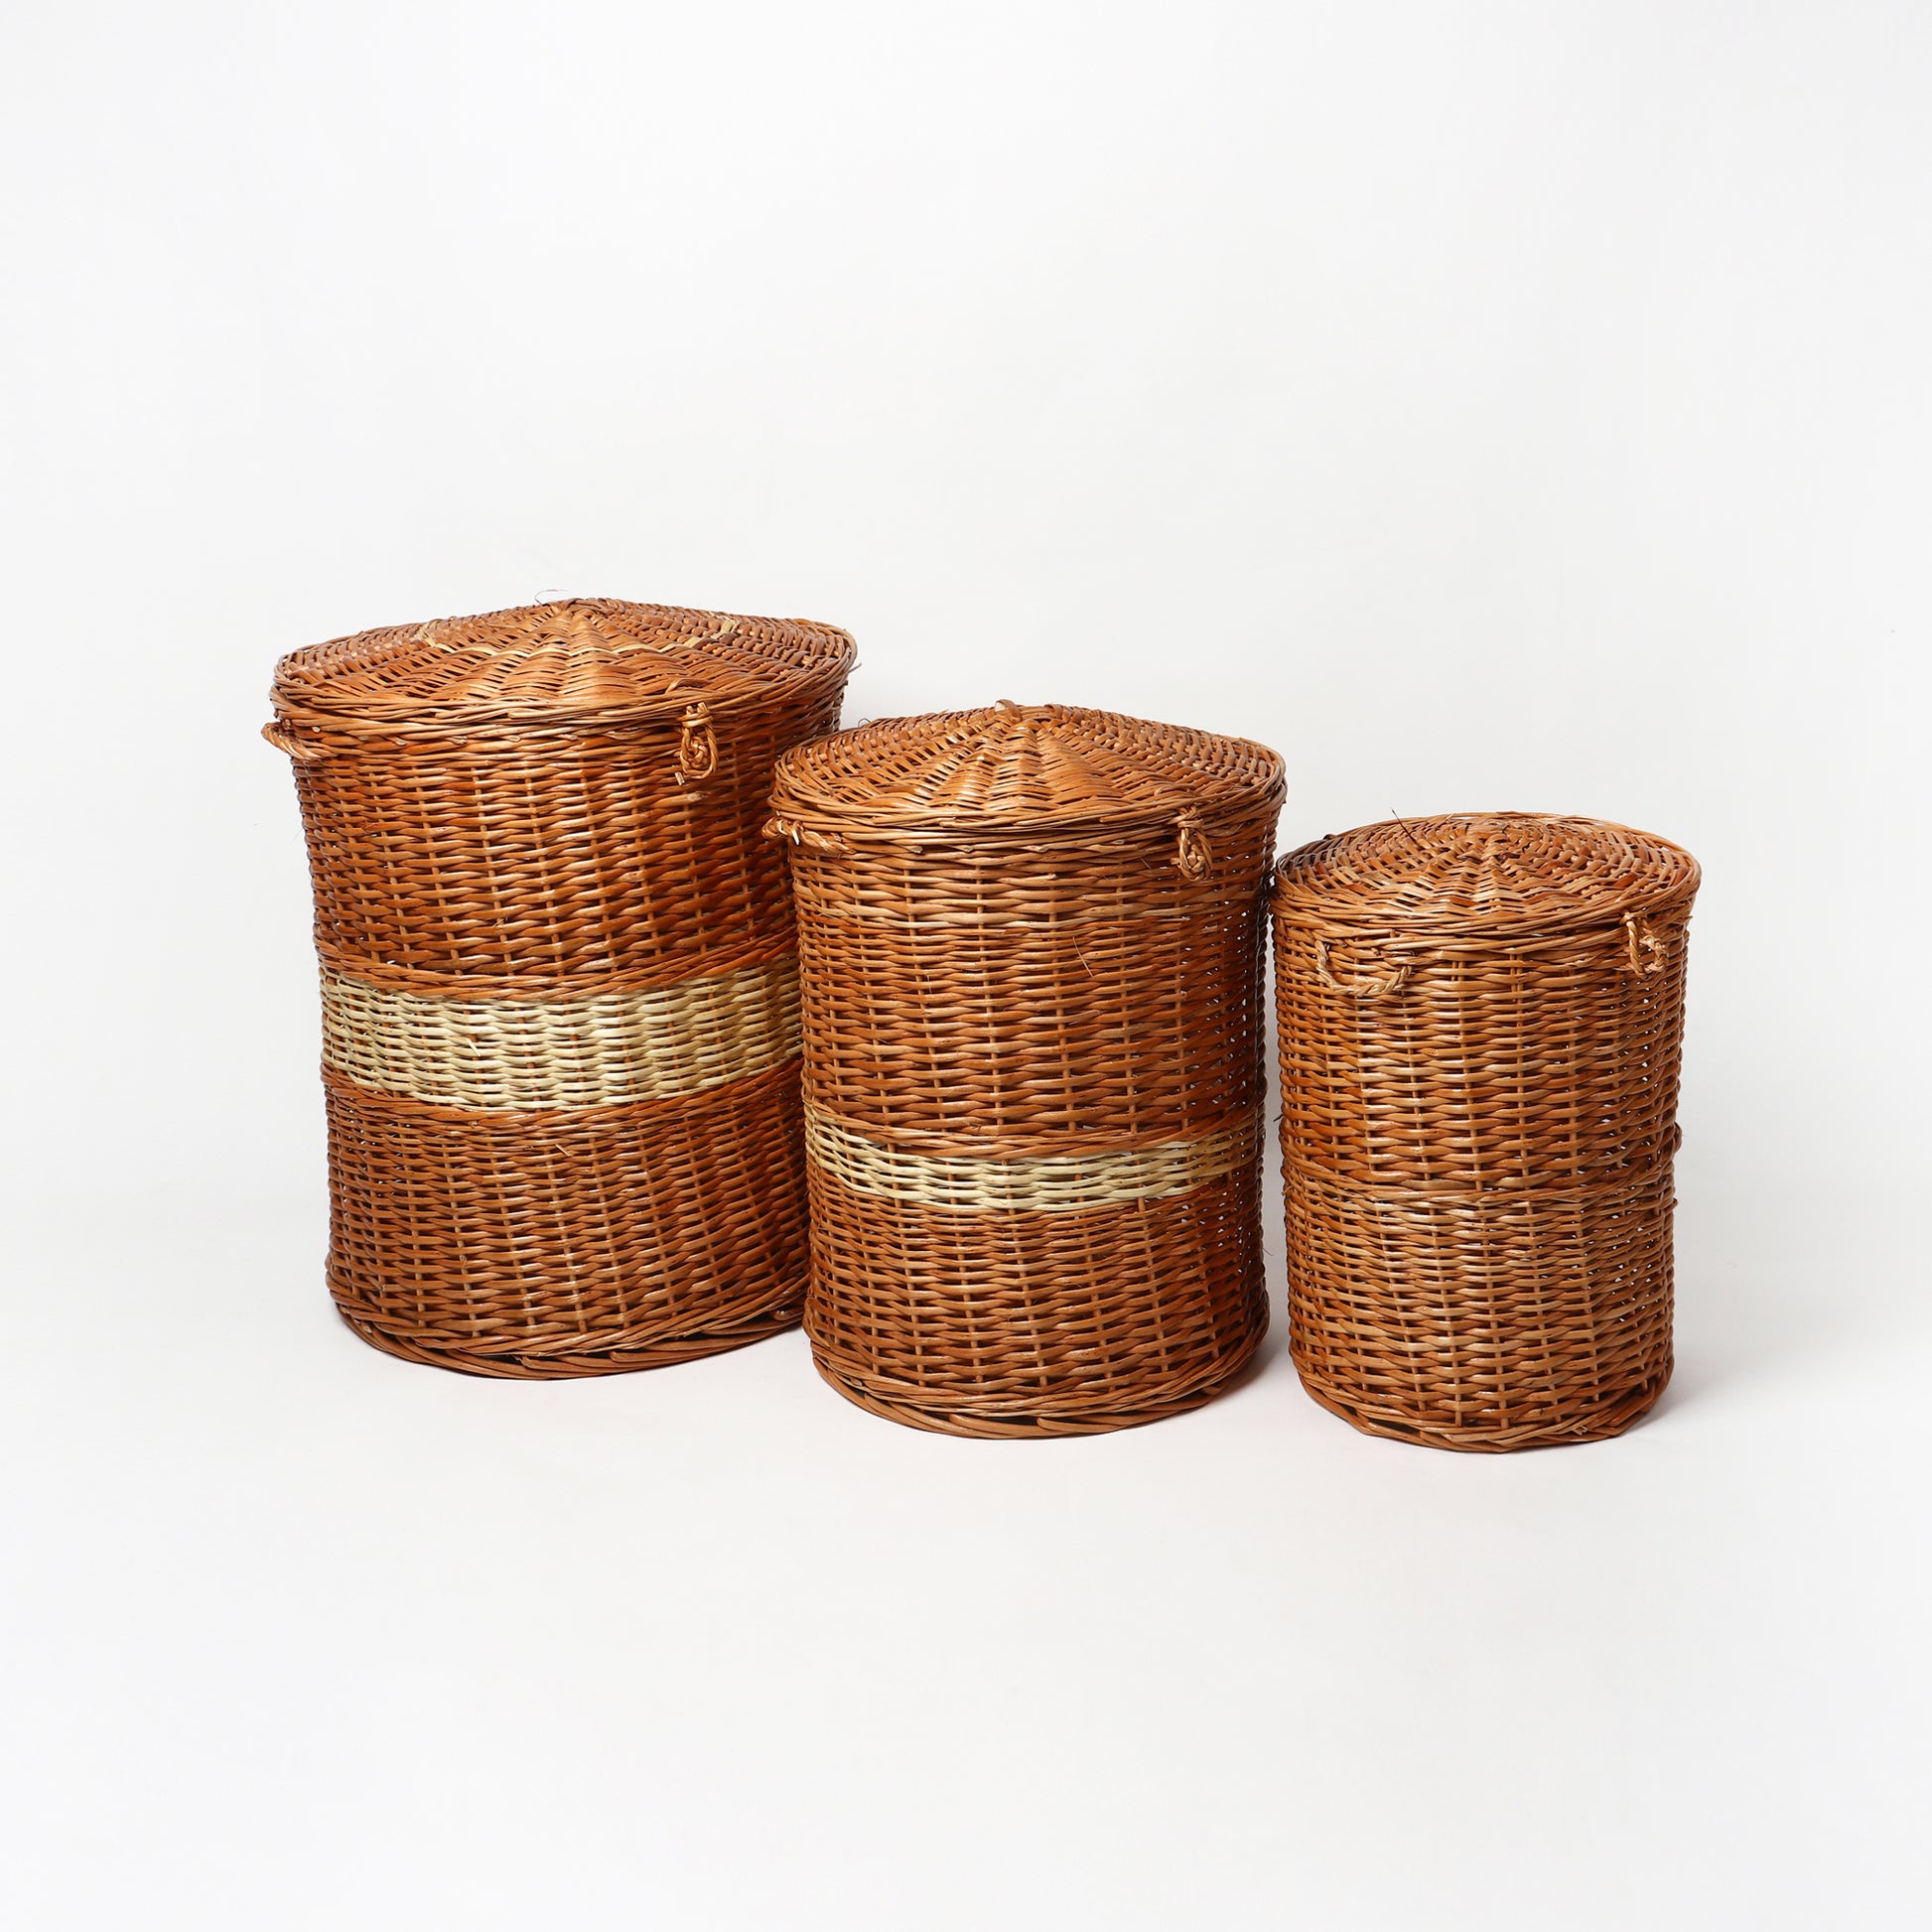 Wicker Laundry Baskets online